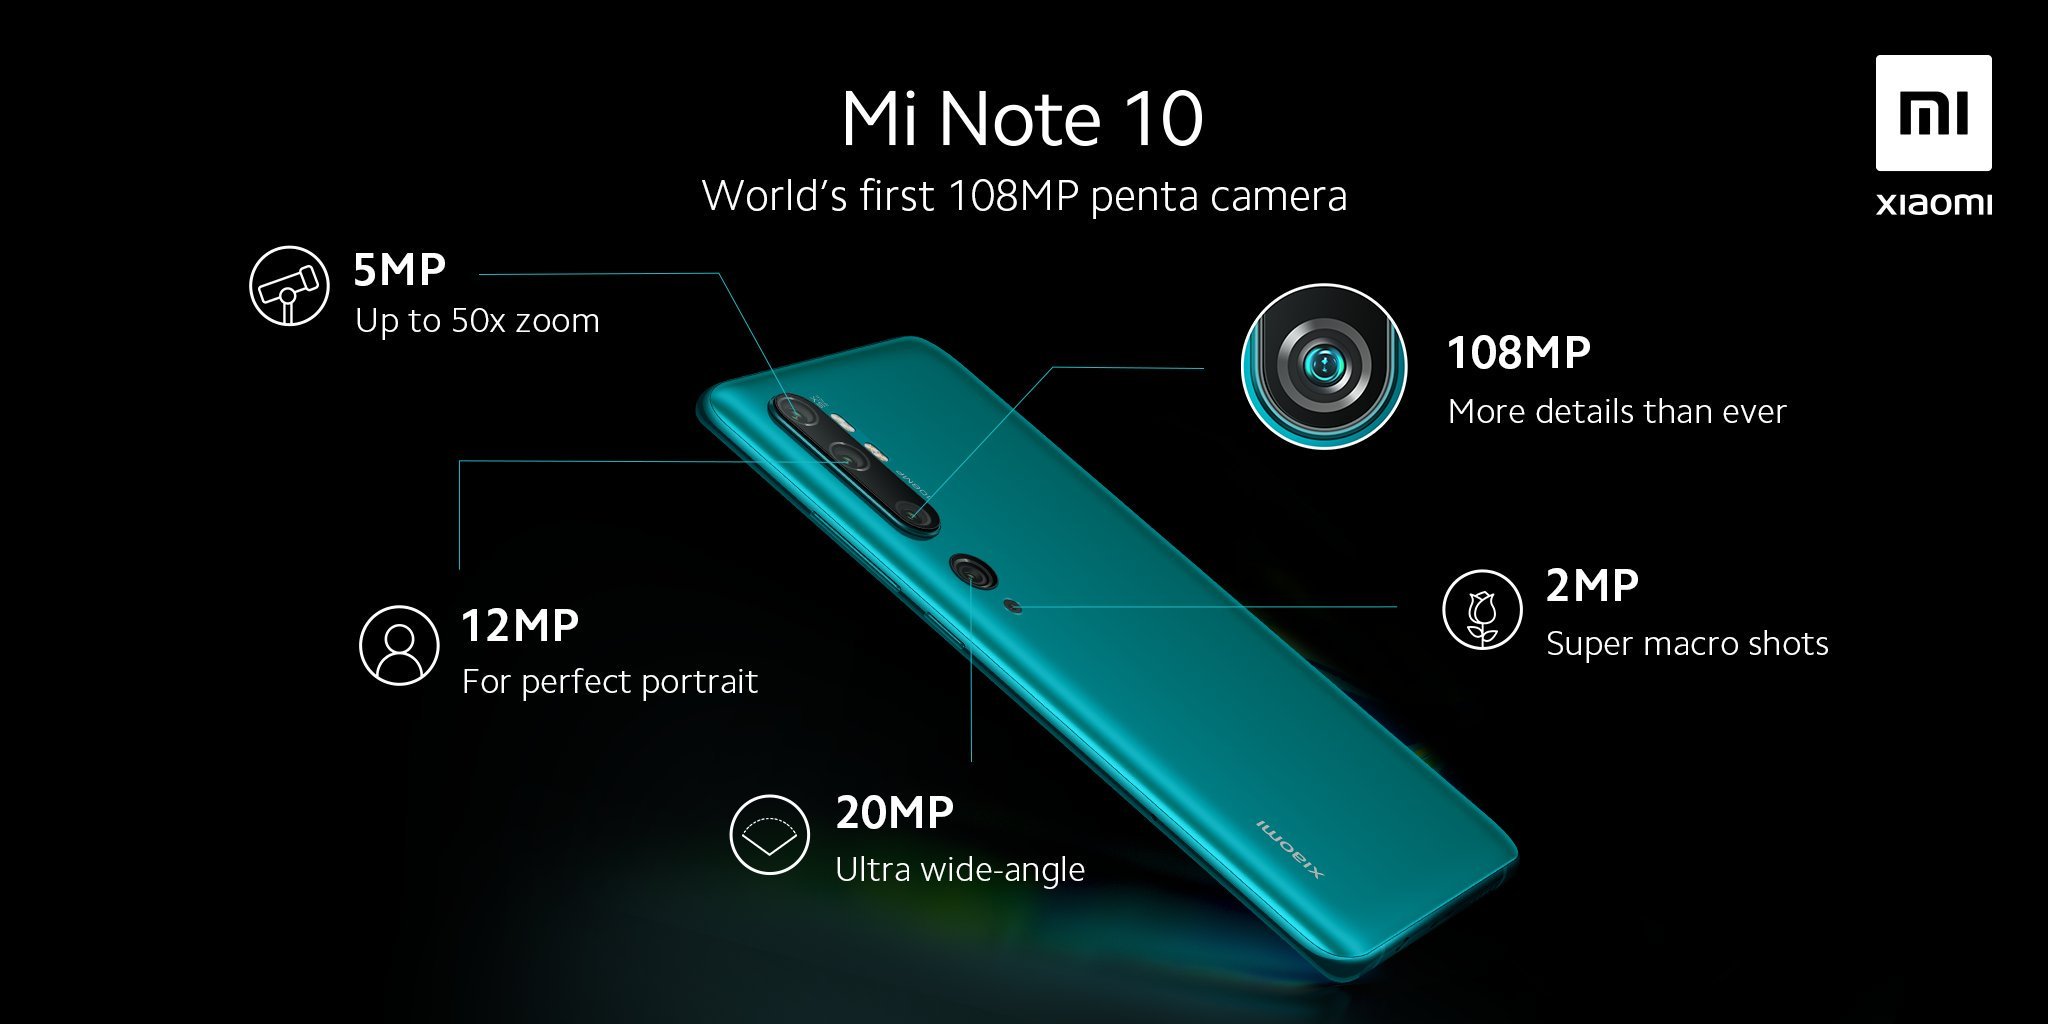 Xiaomi Mi Note 10 with 108MP Penta Camera launch date announced